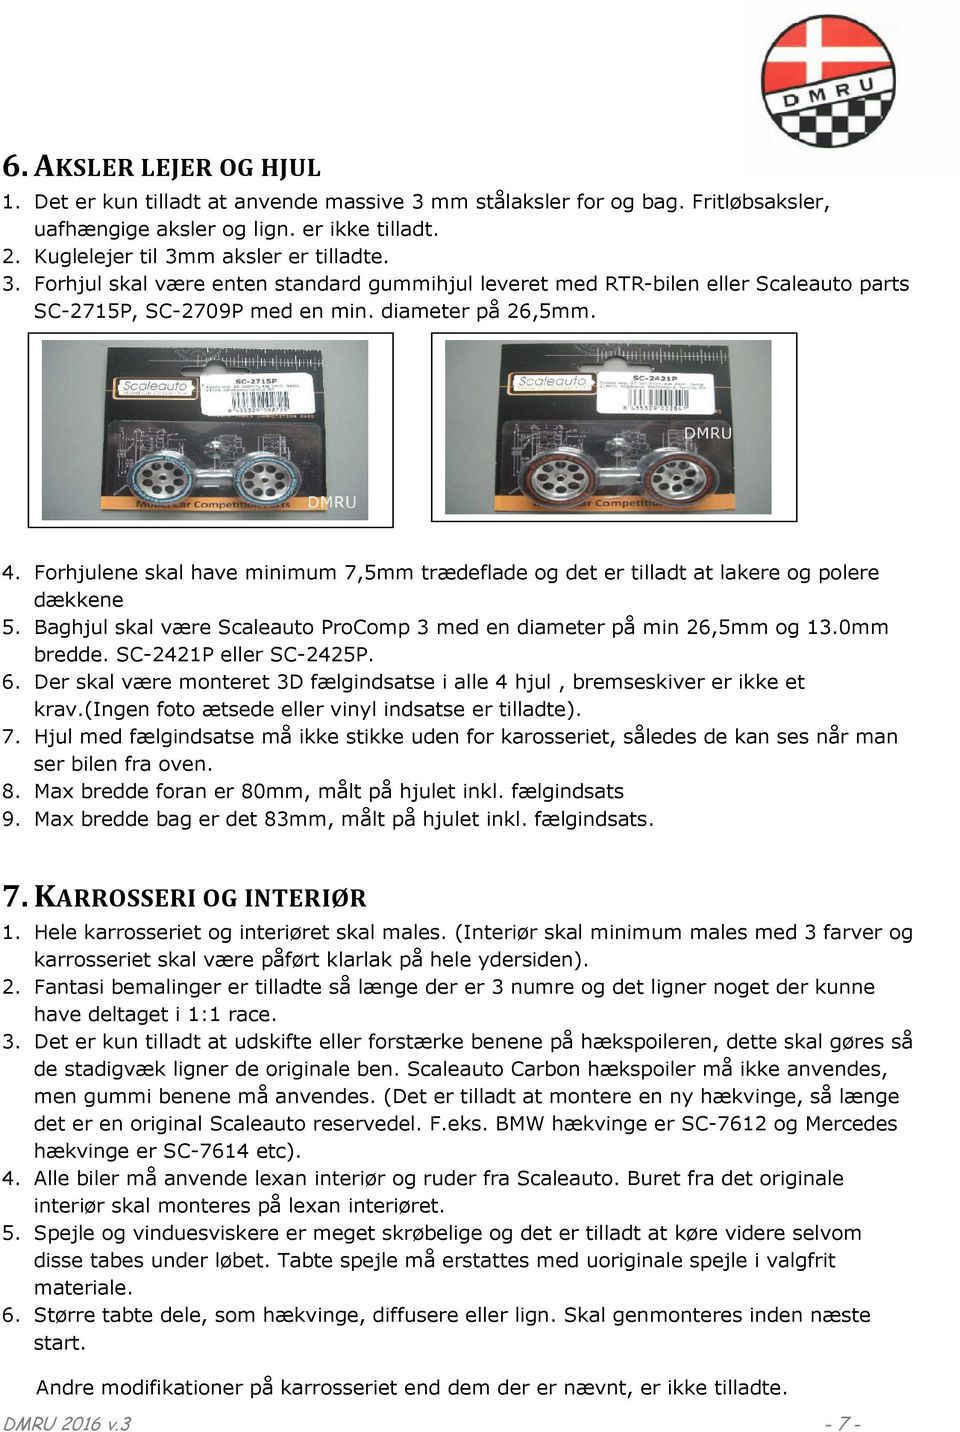 Dansk Mini Racing Union. Vognreglement. 1:24 Scaleauto - PDF Gratis download